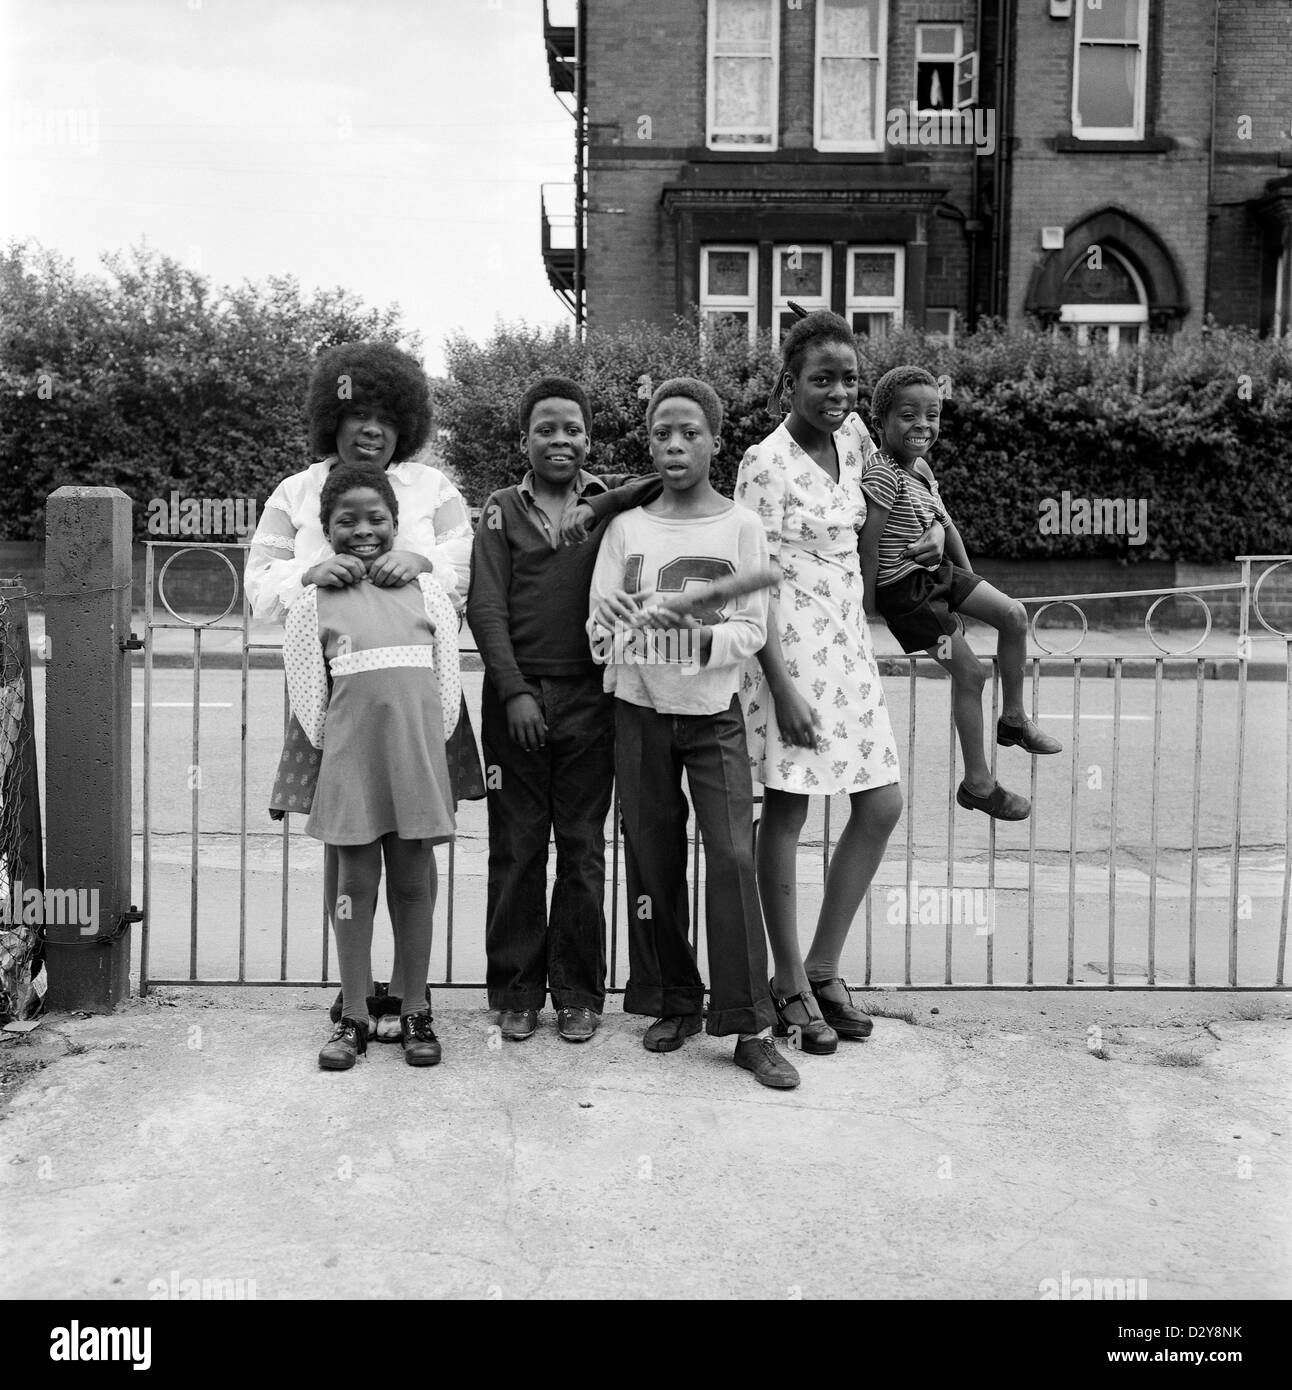 Eine Familie britischer afro-karibischer Geschwister (Familie Roper), die im Jahr 1970er in Leeds West Yorkshire England, England, lächelnd Kinder pochen. Ihre Mutter ist mit dem Baby der Familie in D2YA0M 1974 KATHY DEWITT abgebildet Stockfoto